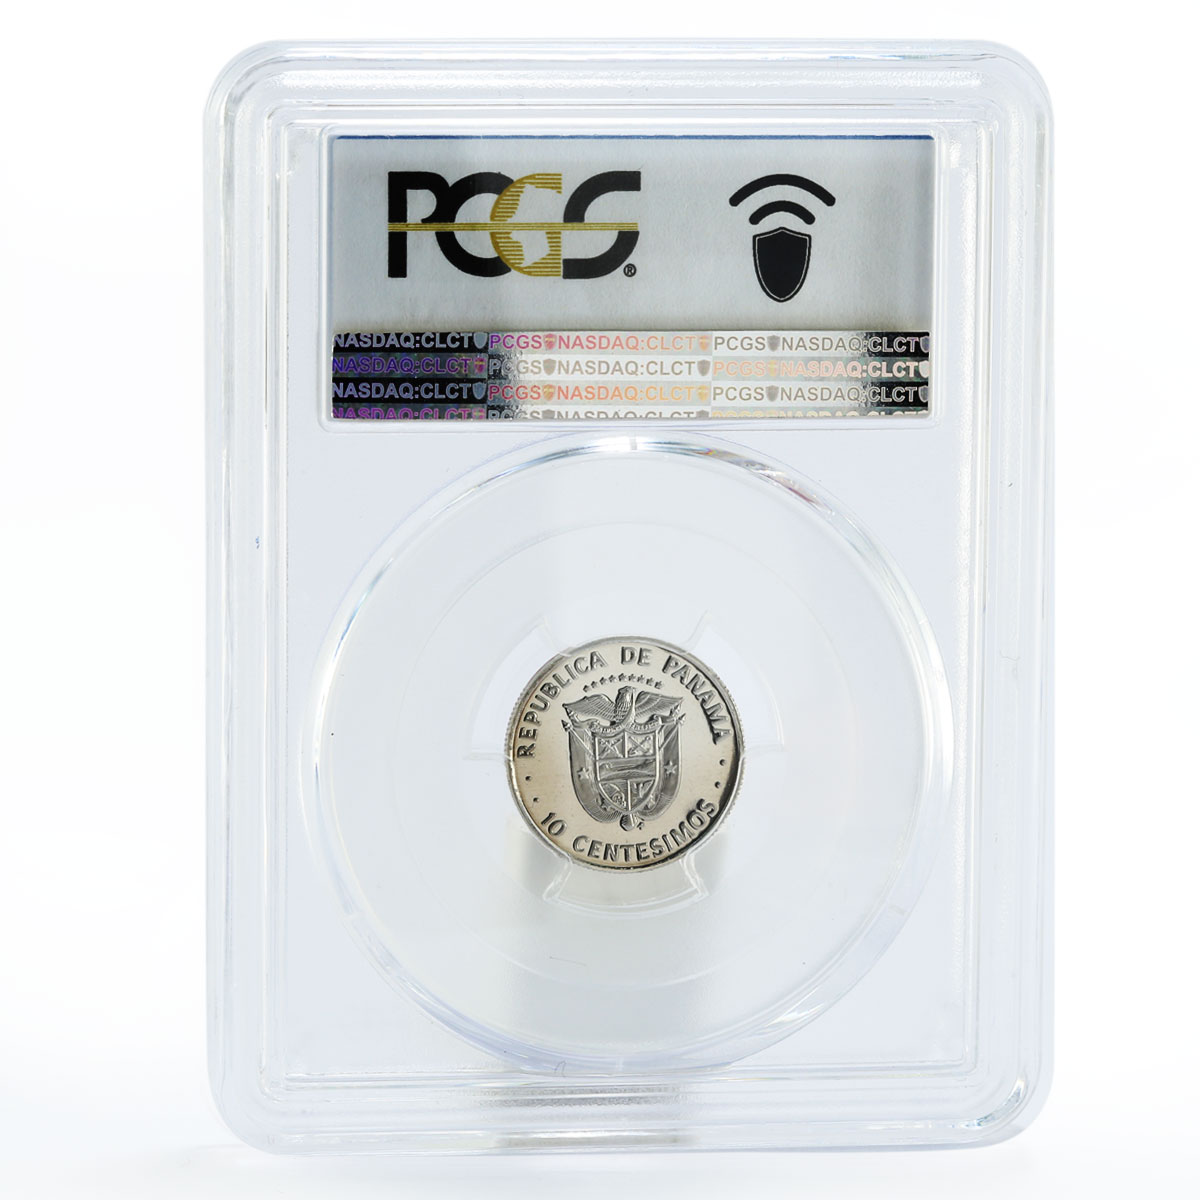 Panama 10 centesimo President Manuel E. Amador PR70 PCGS proof nickel coin 1980